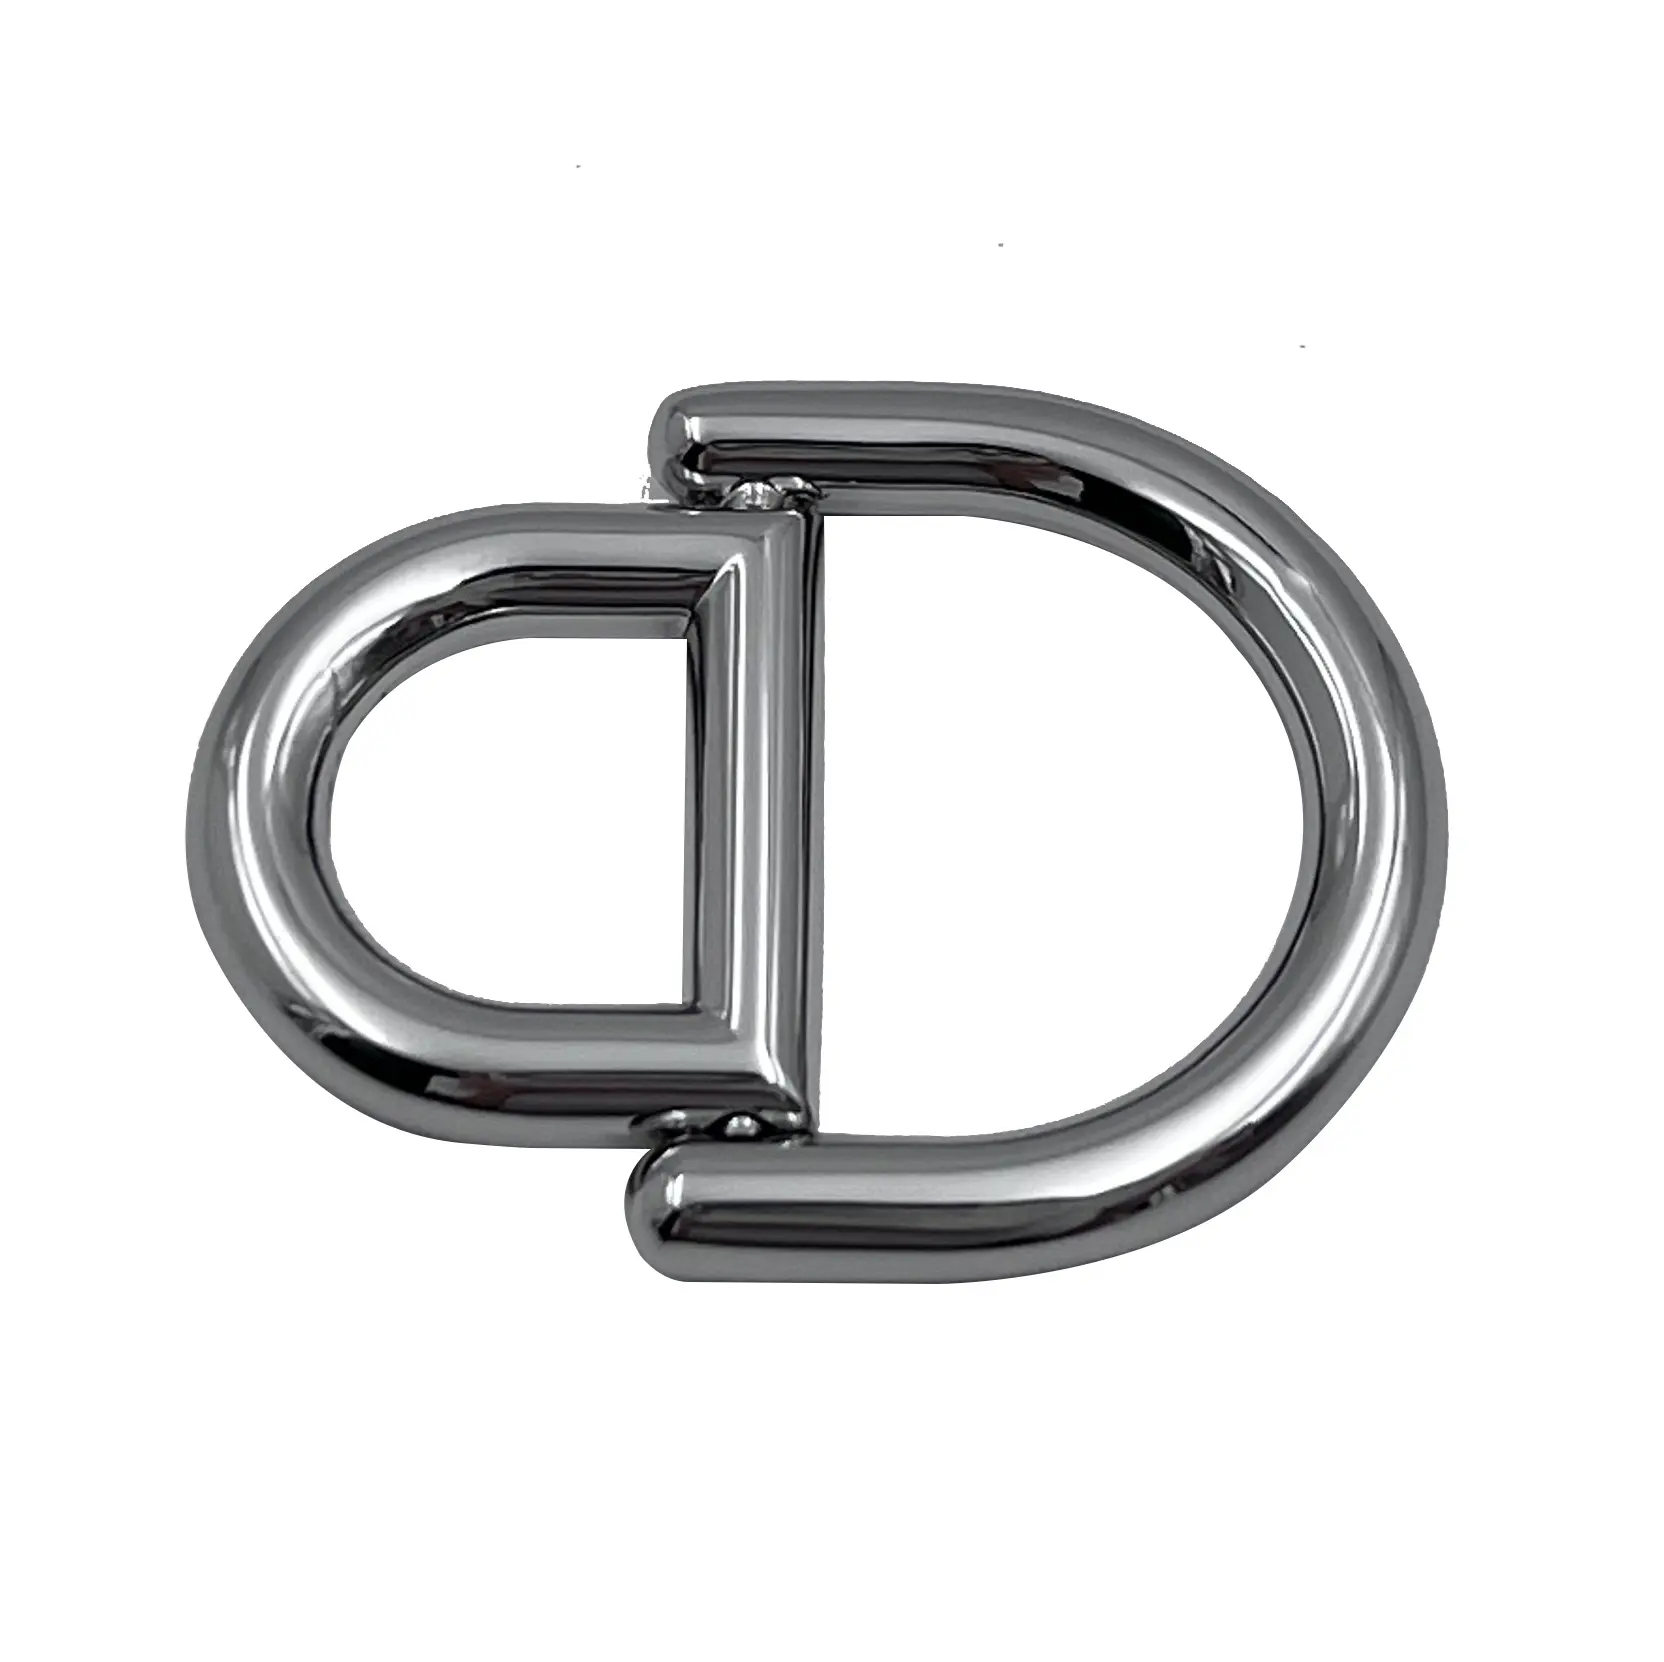 Hochwertige Zink legierung Metall D Ring Schnalle Handtasche Zubehör Gürtels chnalle Verschiedene Farben Doppel D Ring